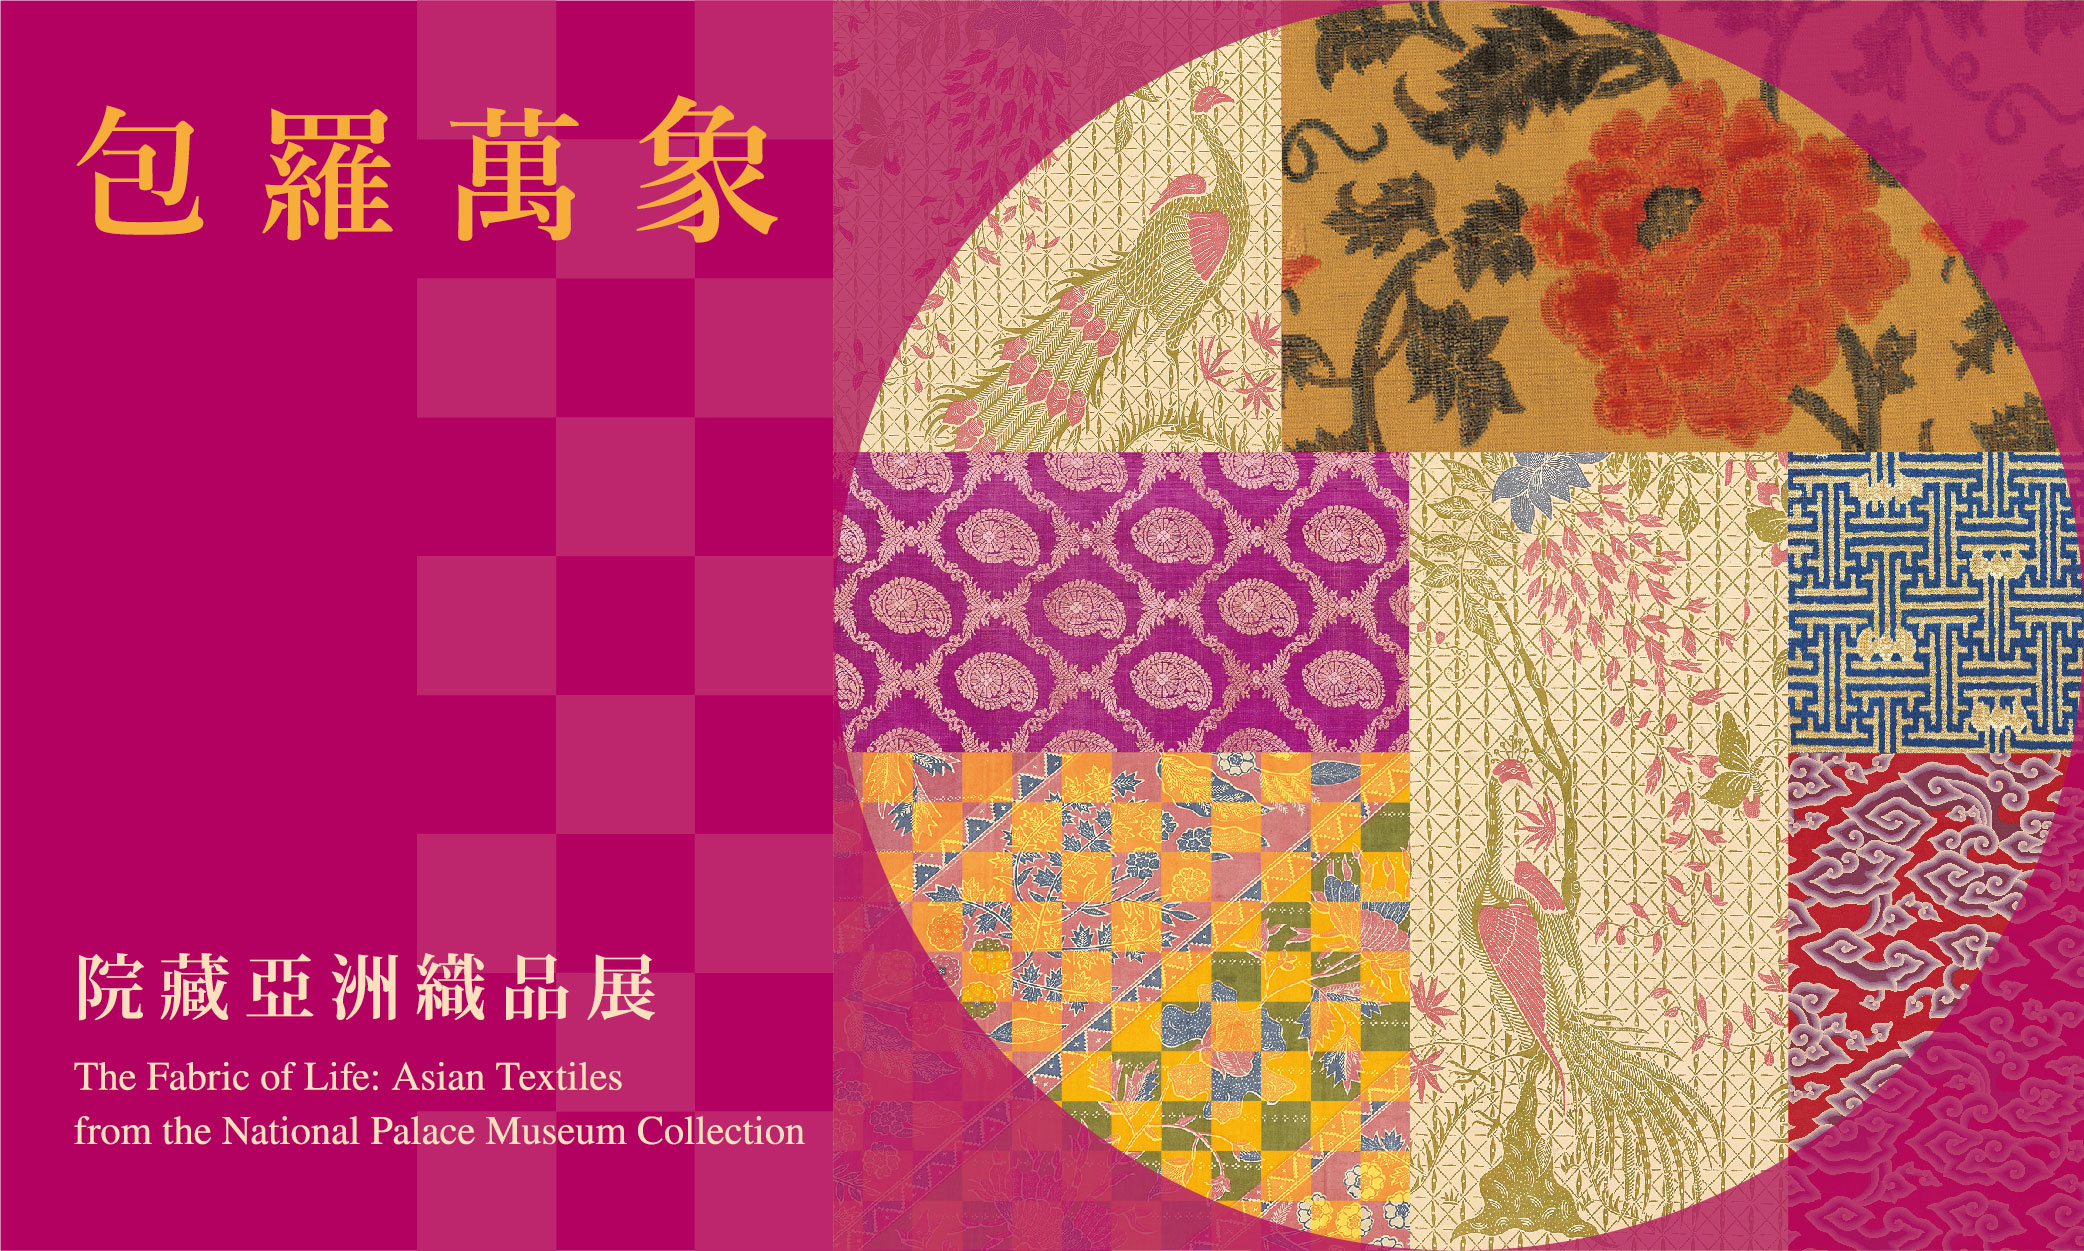 包羅萬象—院藏亞洲織品展 